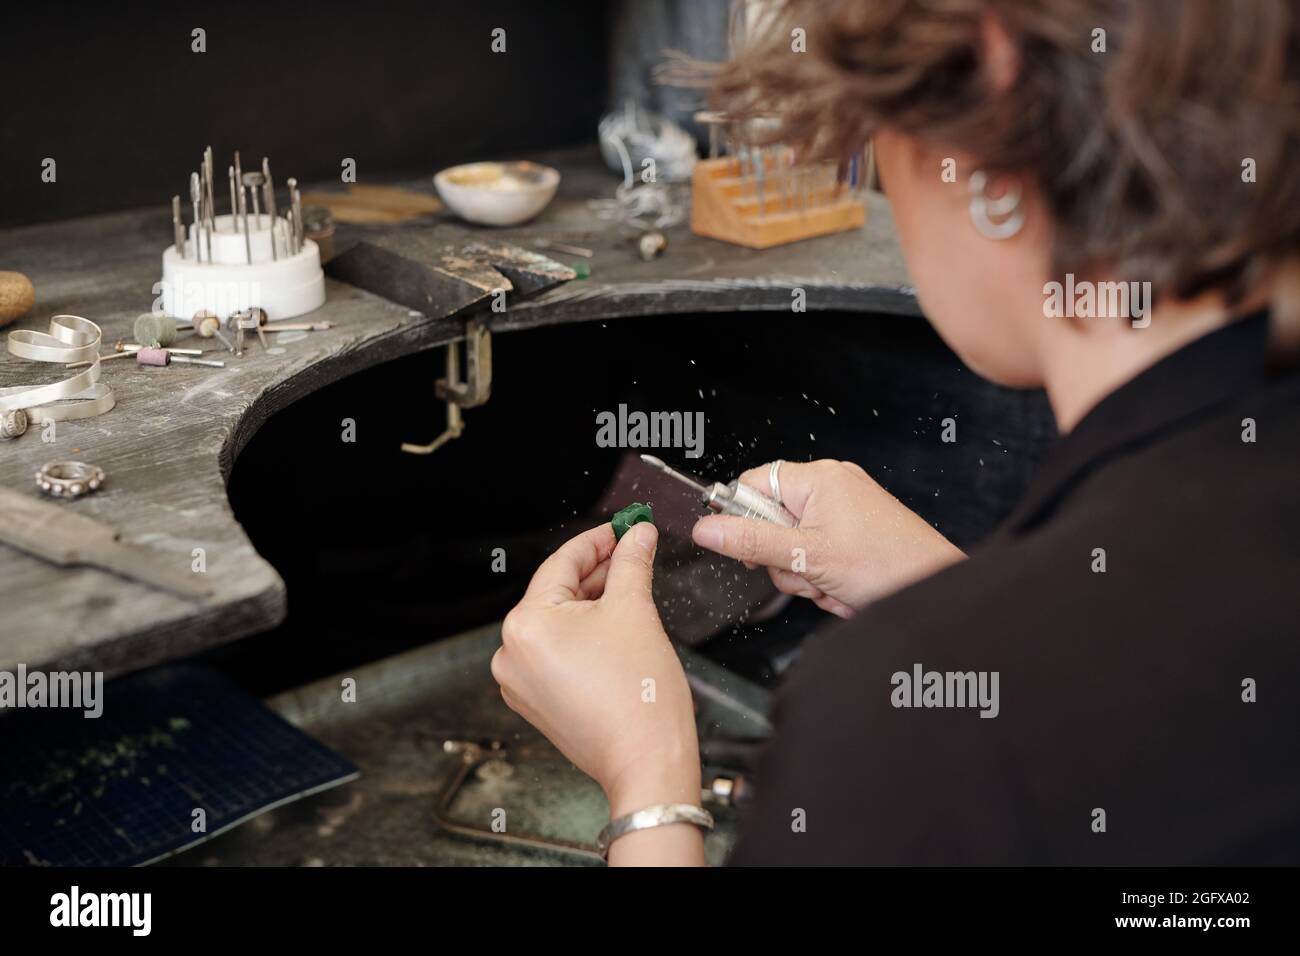 Über die Schulter schauen, wie die Kunsthandwerkerin beim Arbeiten mit Schmuck in der Werkstatt Polierer verwendet Stockfoto